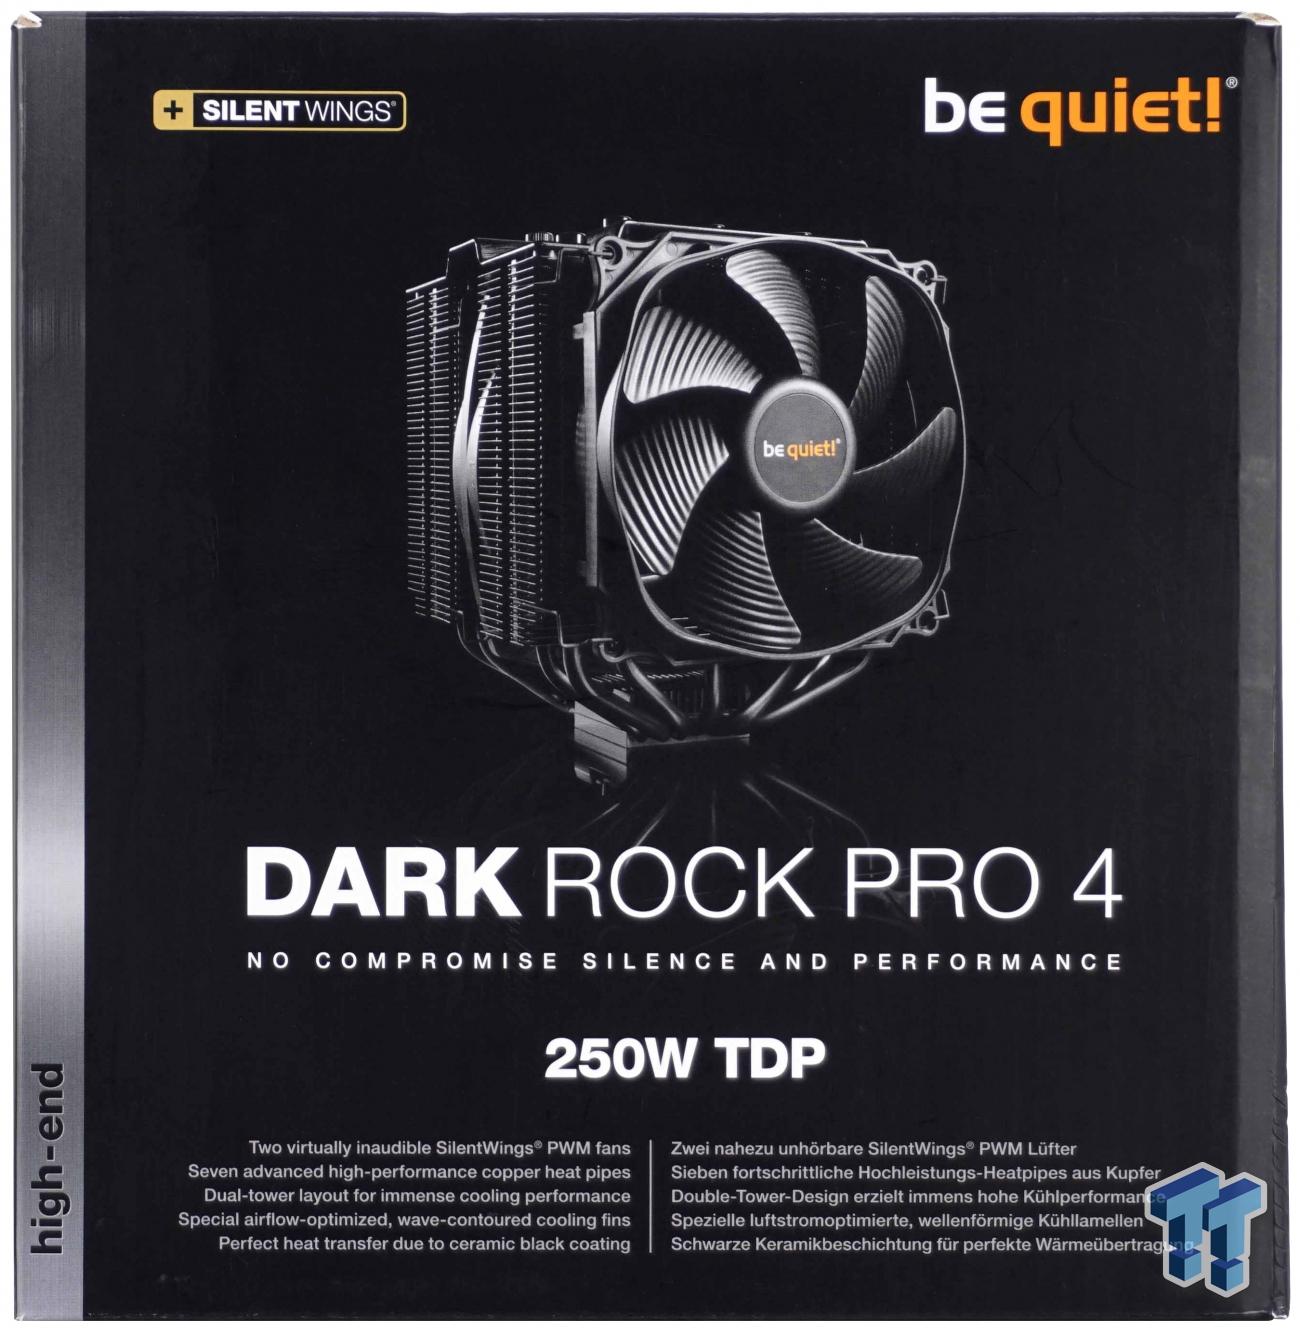 Review - be quiet! Dark Rock Pro 4 CPU Cooler